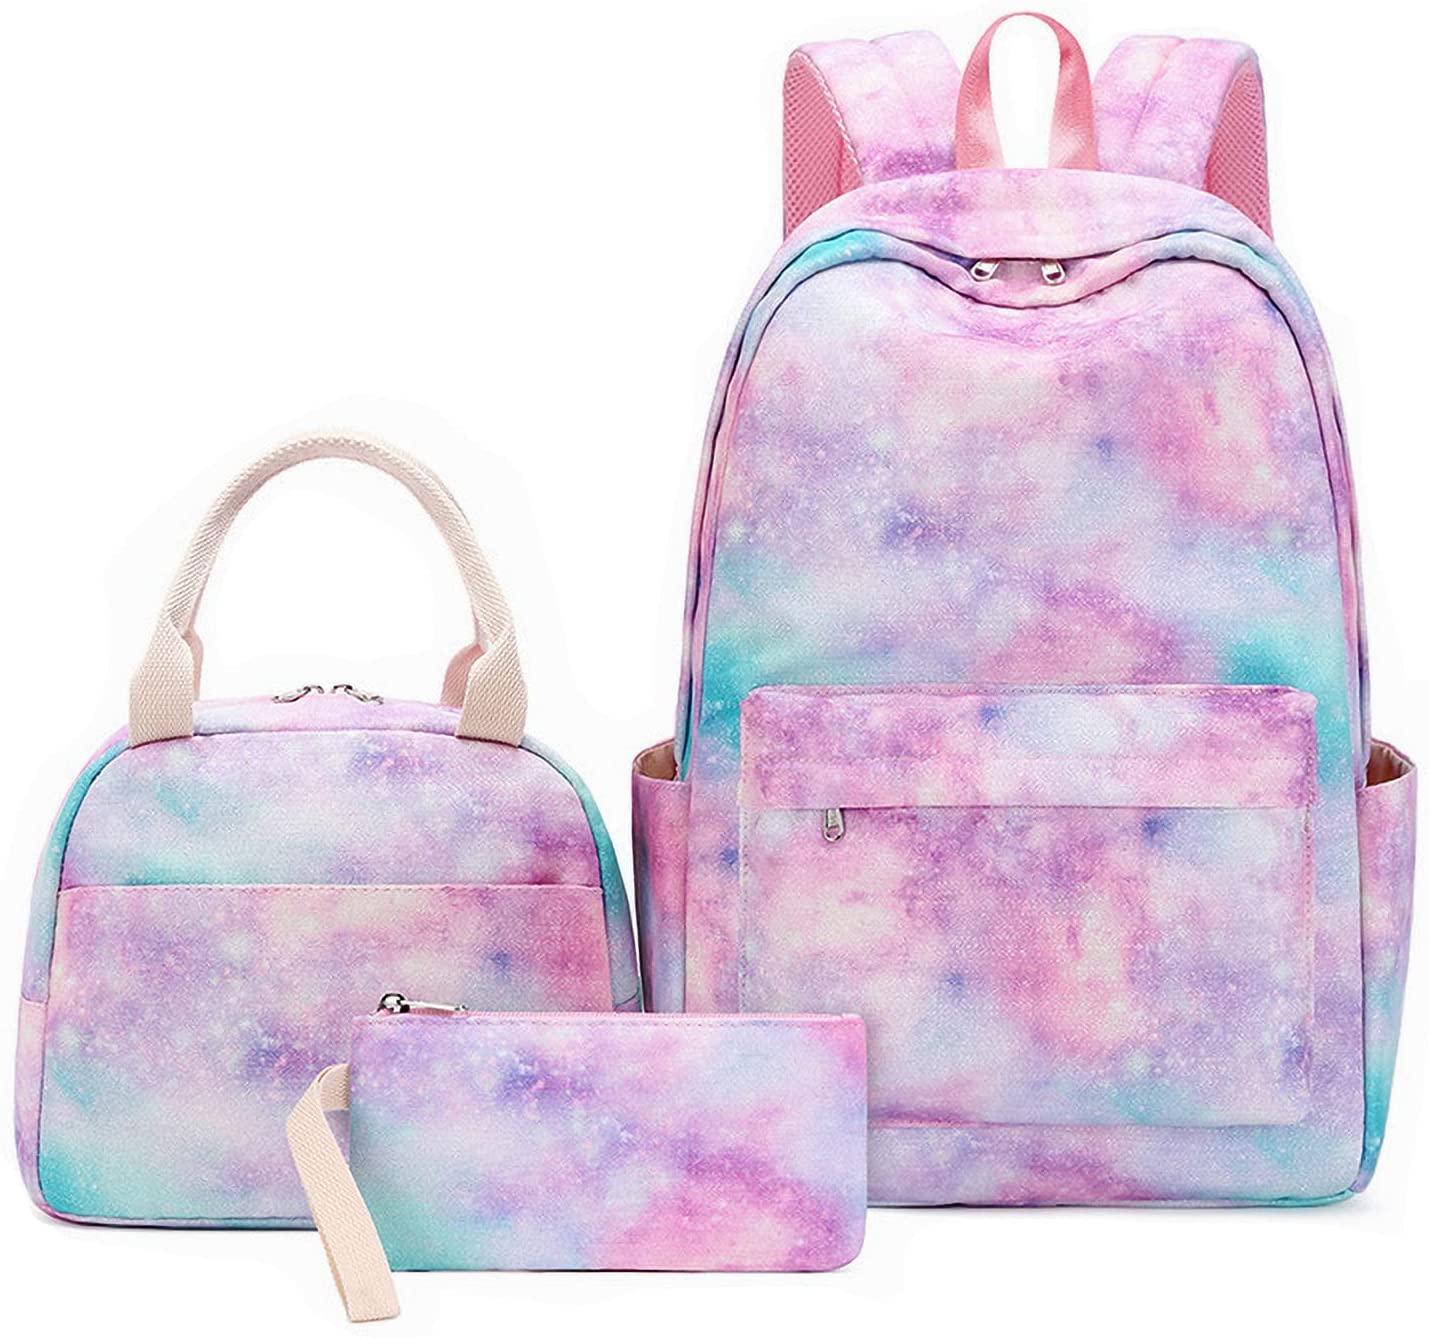 Backpacks for Girls for $7+ (80% off)